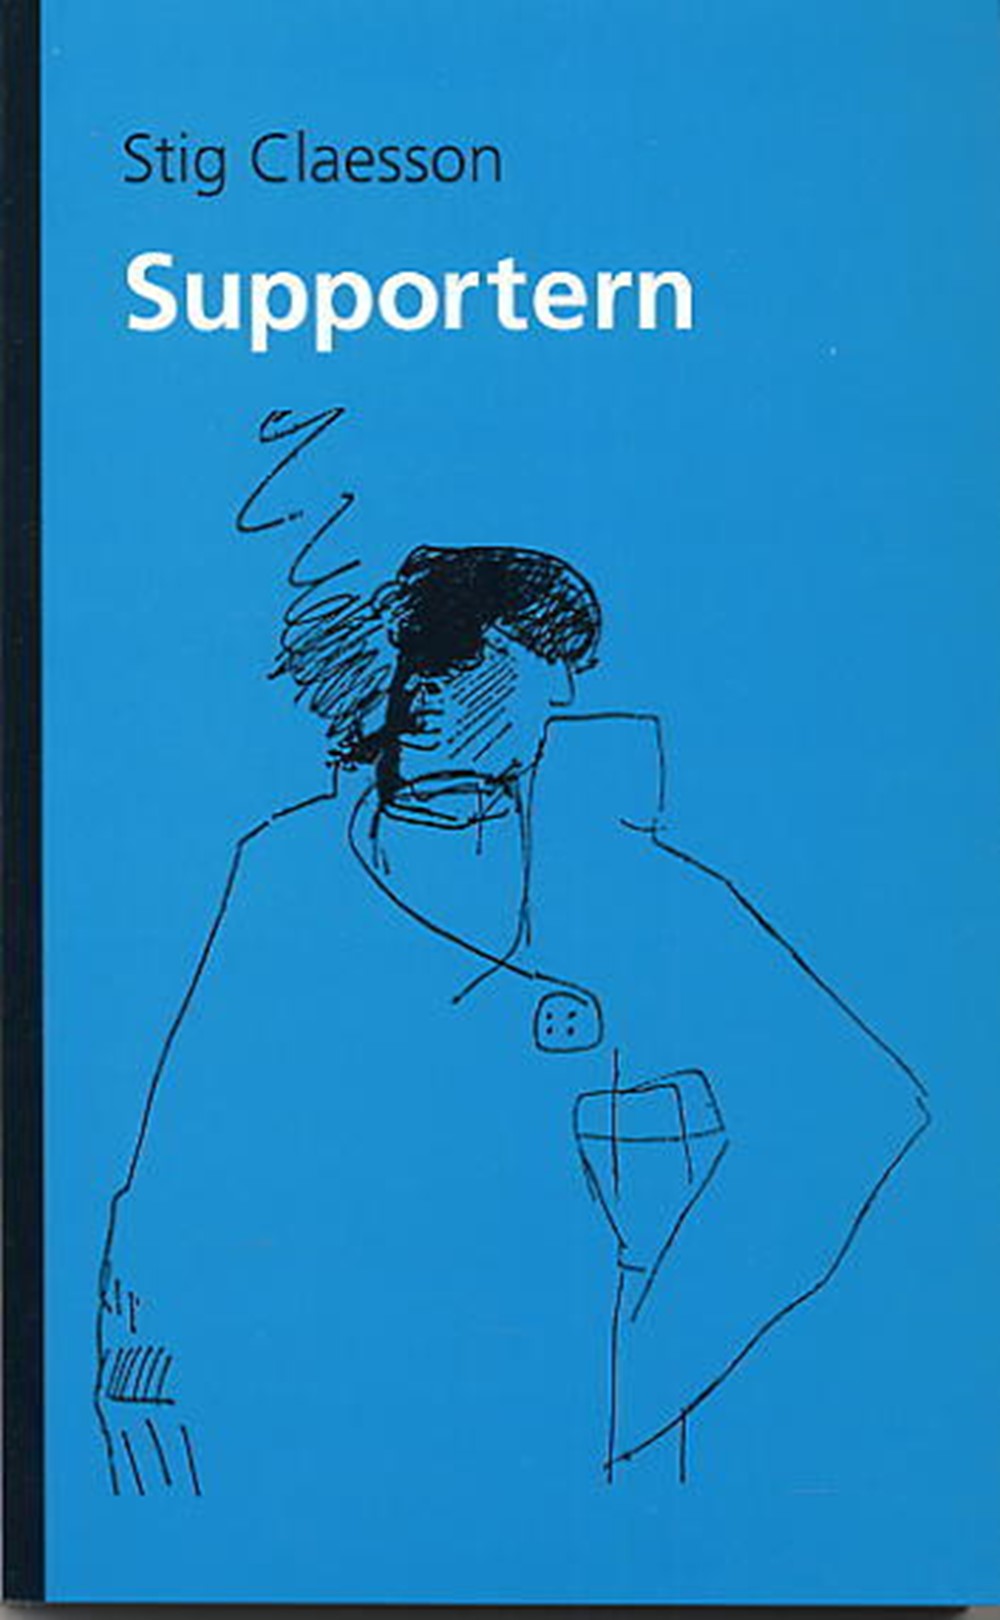 Bokomslaget till Supportern föreställande en enkelt skissad individ mot blå bakgrund.